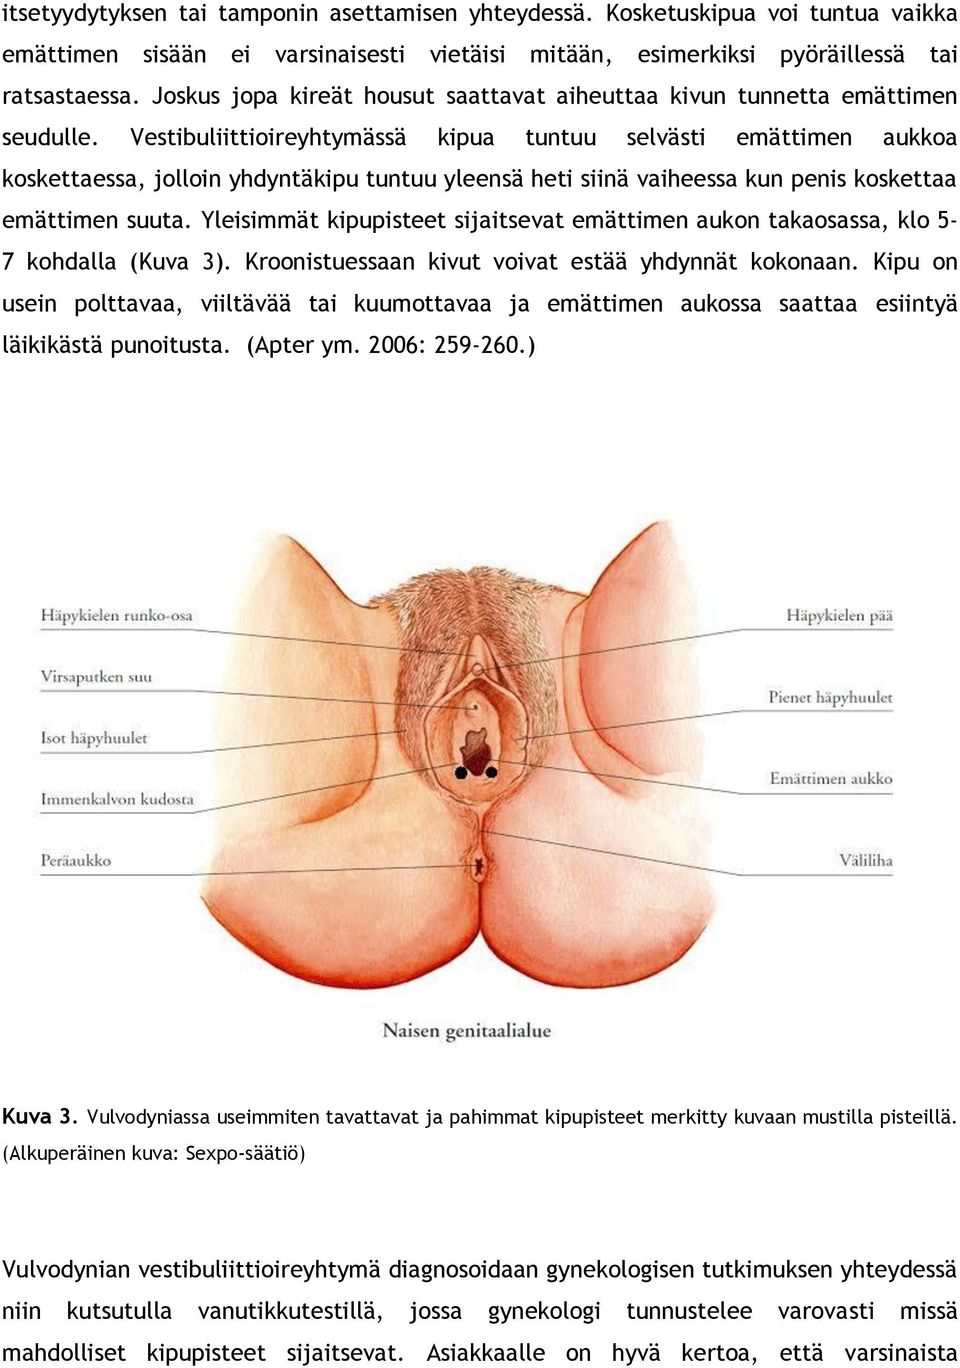 Vestibuliittioireyhtymässä kipua tuntuu selvästi emättimen aukkoa koskettaessa, jolloin yhdyntäkipu tuntuu yleensä heti siinä vaiheessa kun penis koskettaa emättimen suuta.